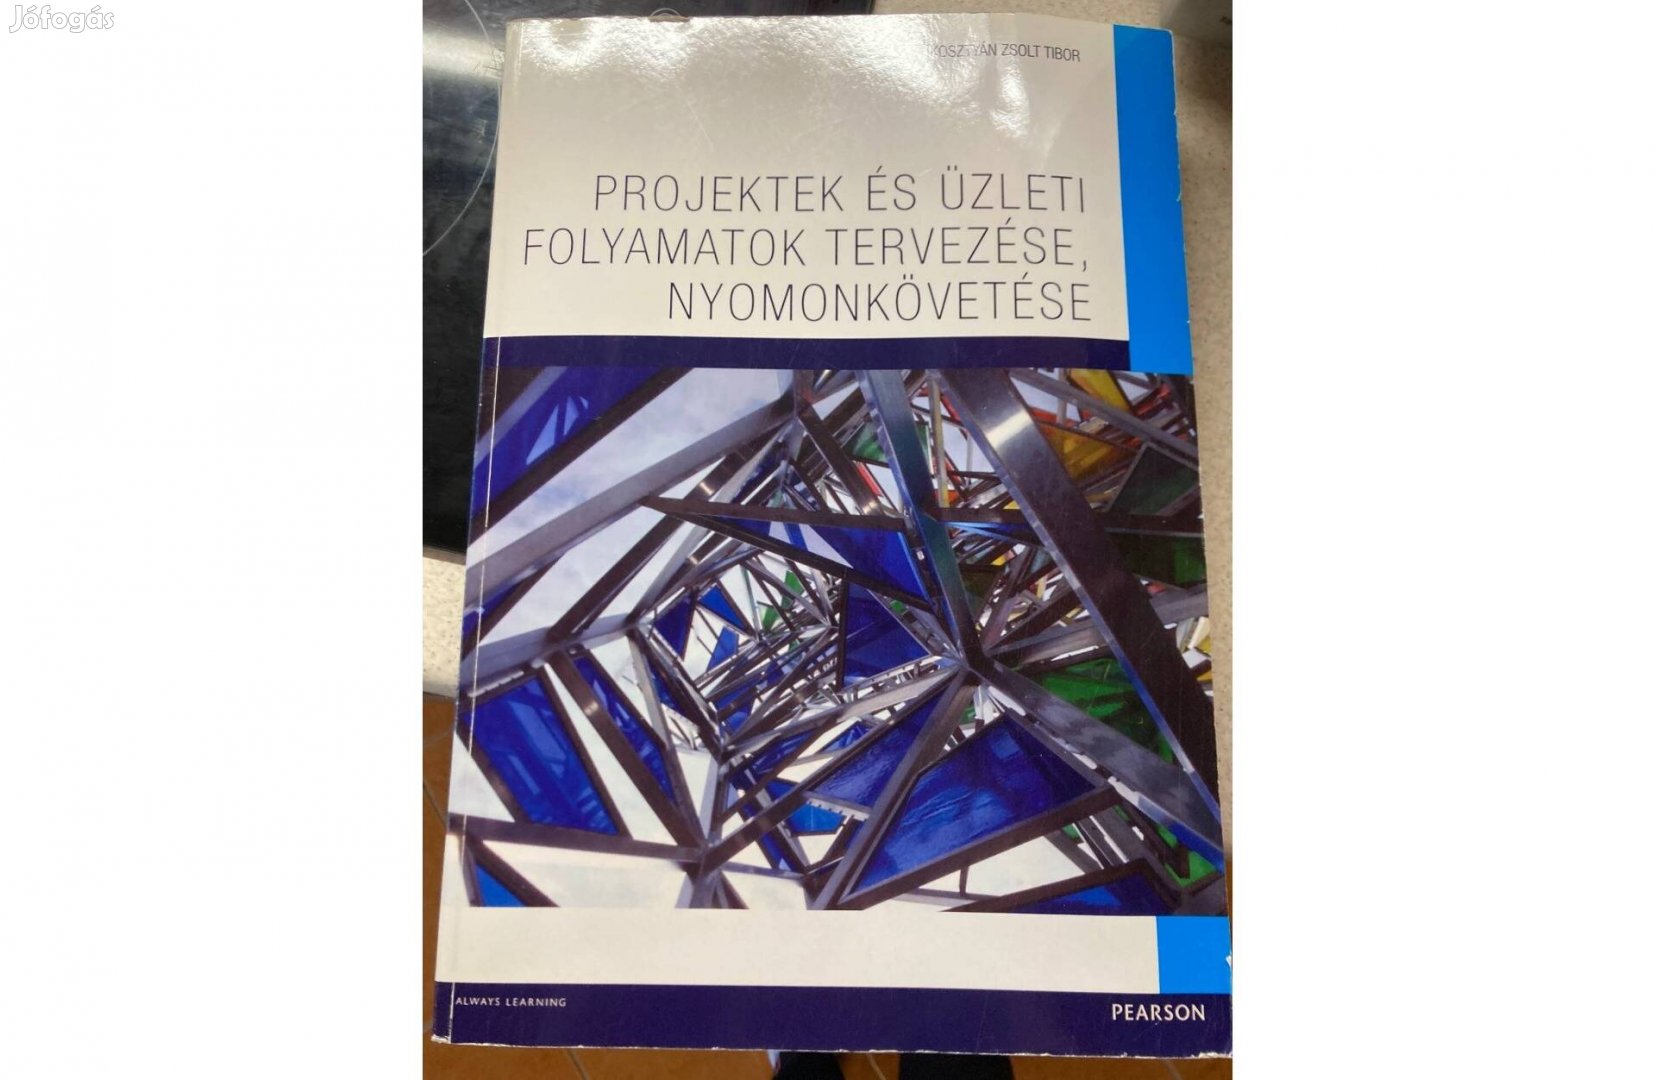 Kosztyán Zsolt Tibor: Projektek és Üzleti folyamatok tervezése, nyomon